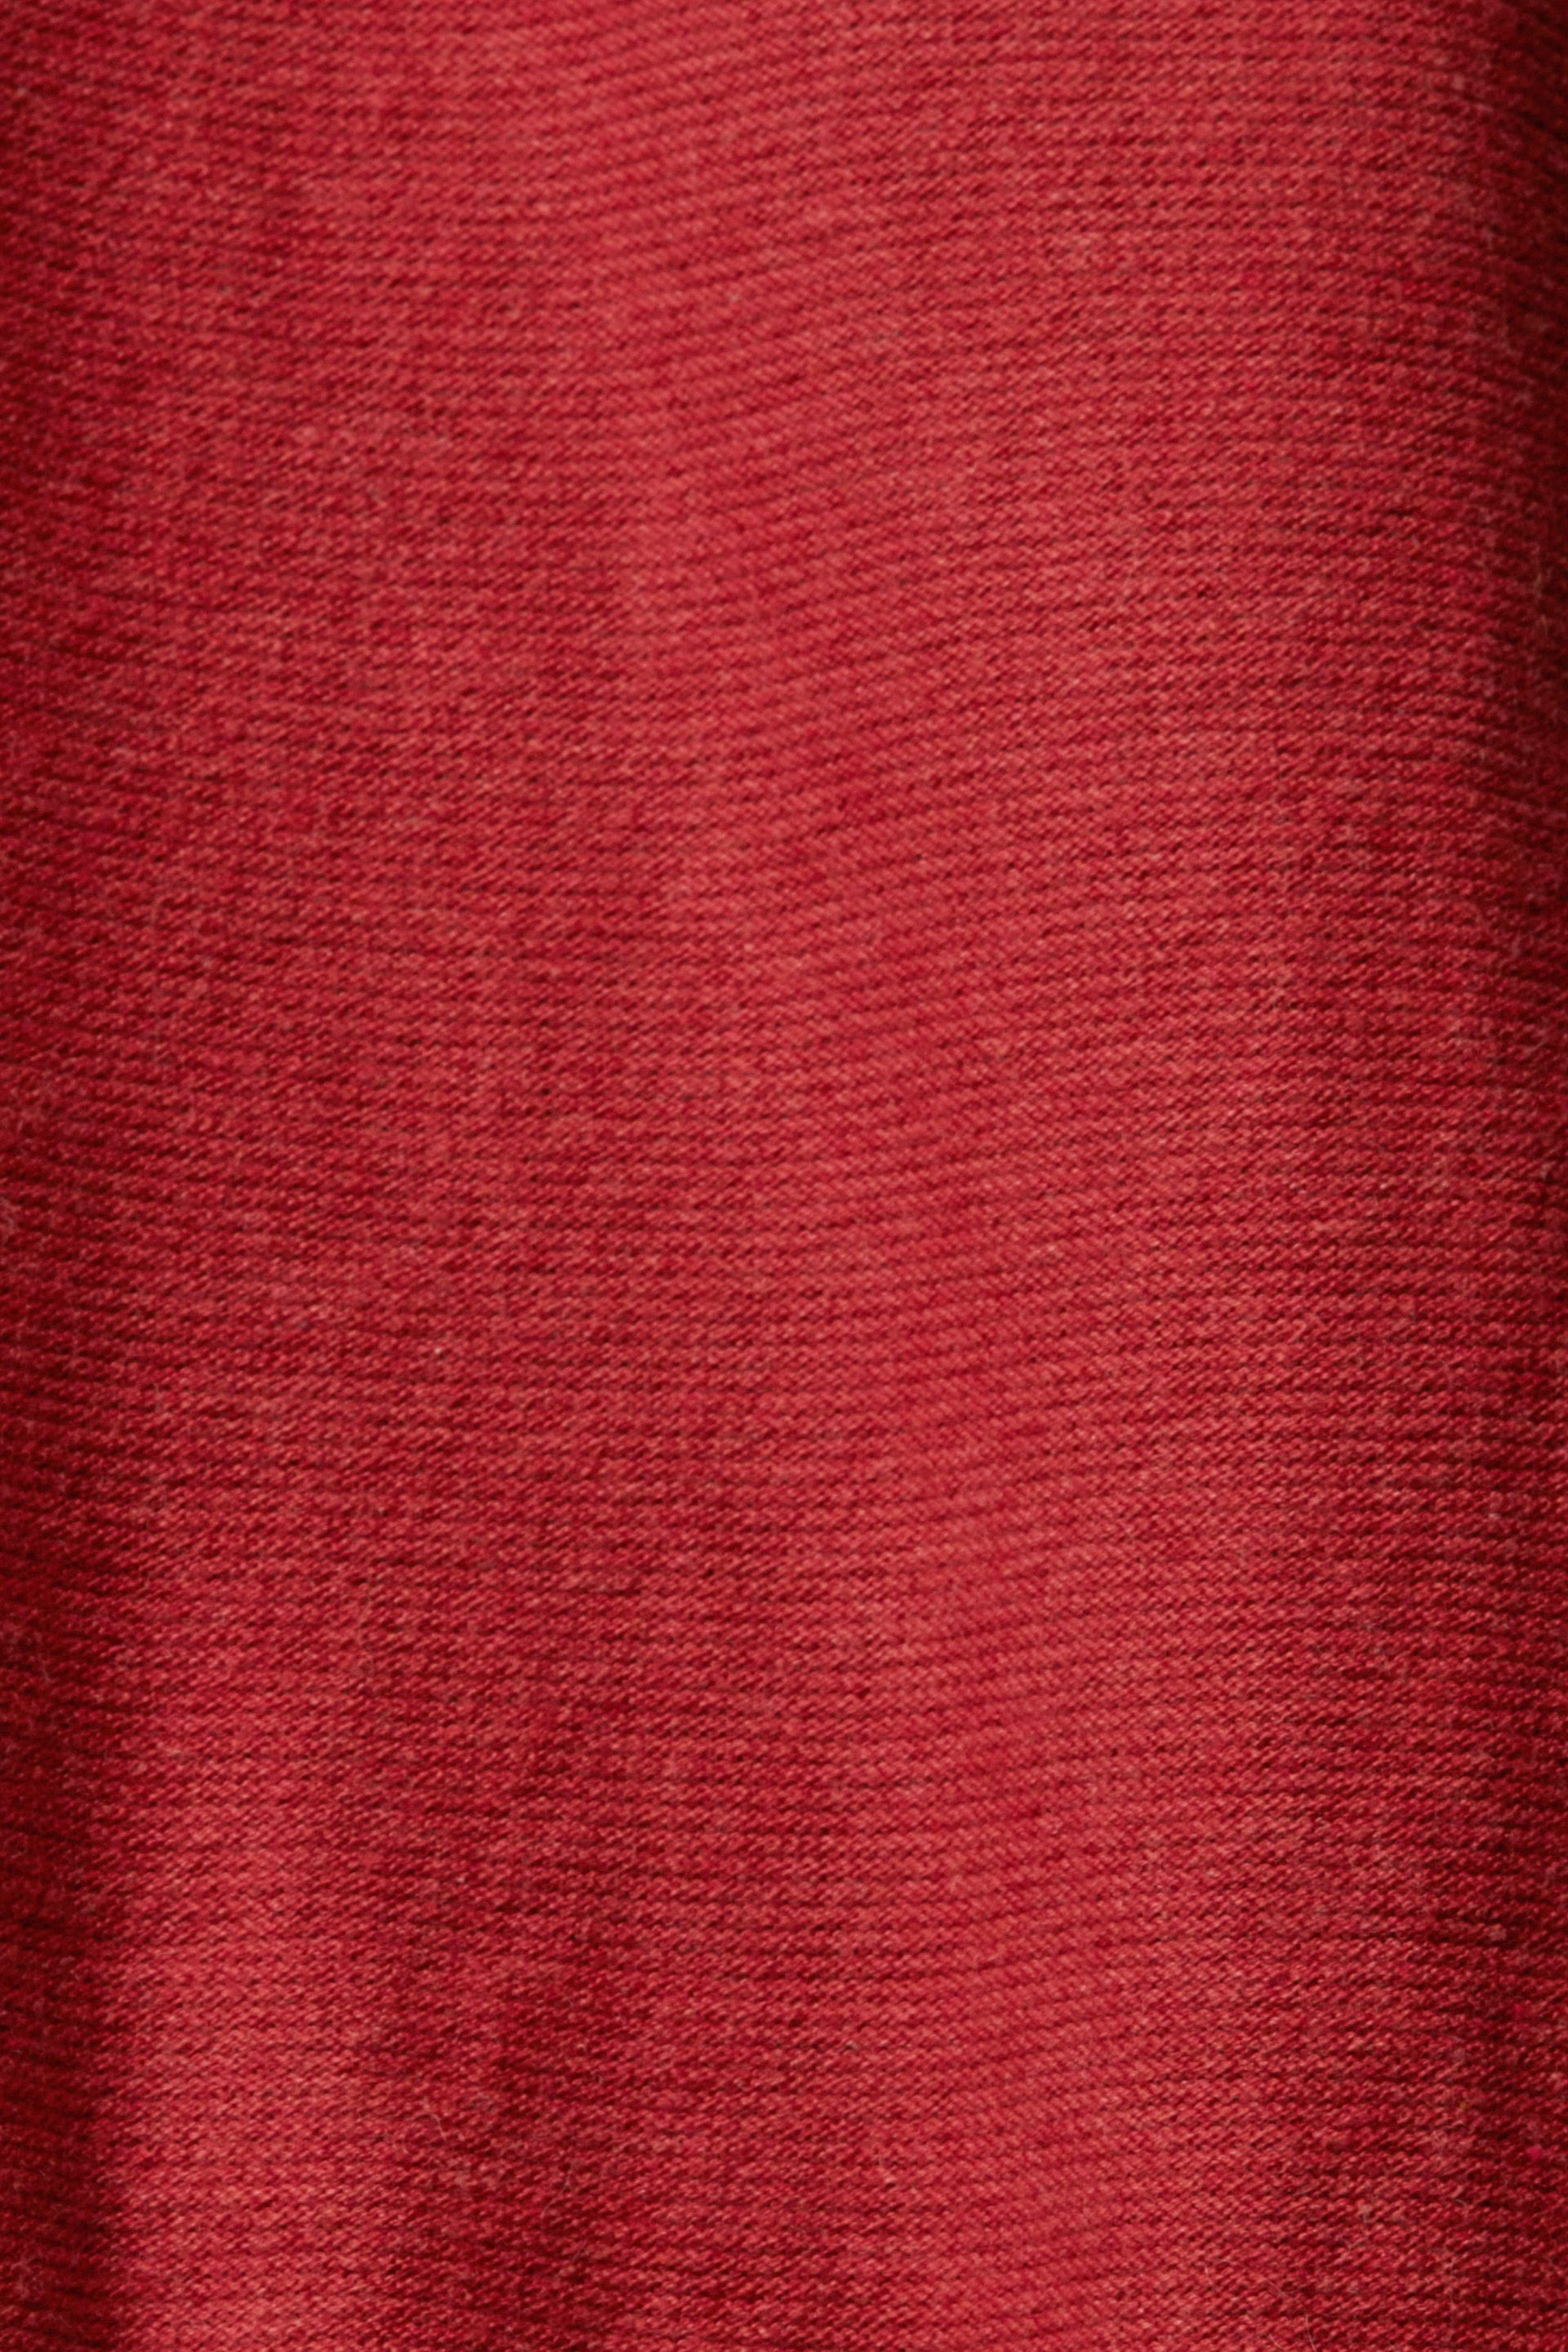 Maglione girocollo jacquard, Rosso mattone, large image number 3